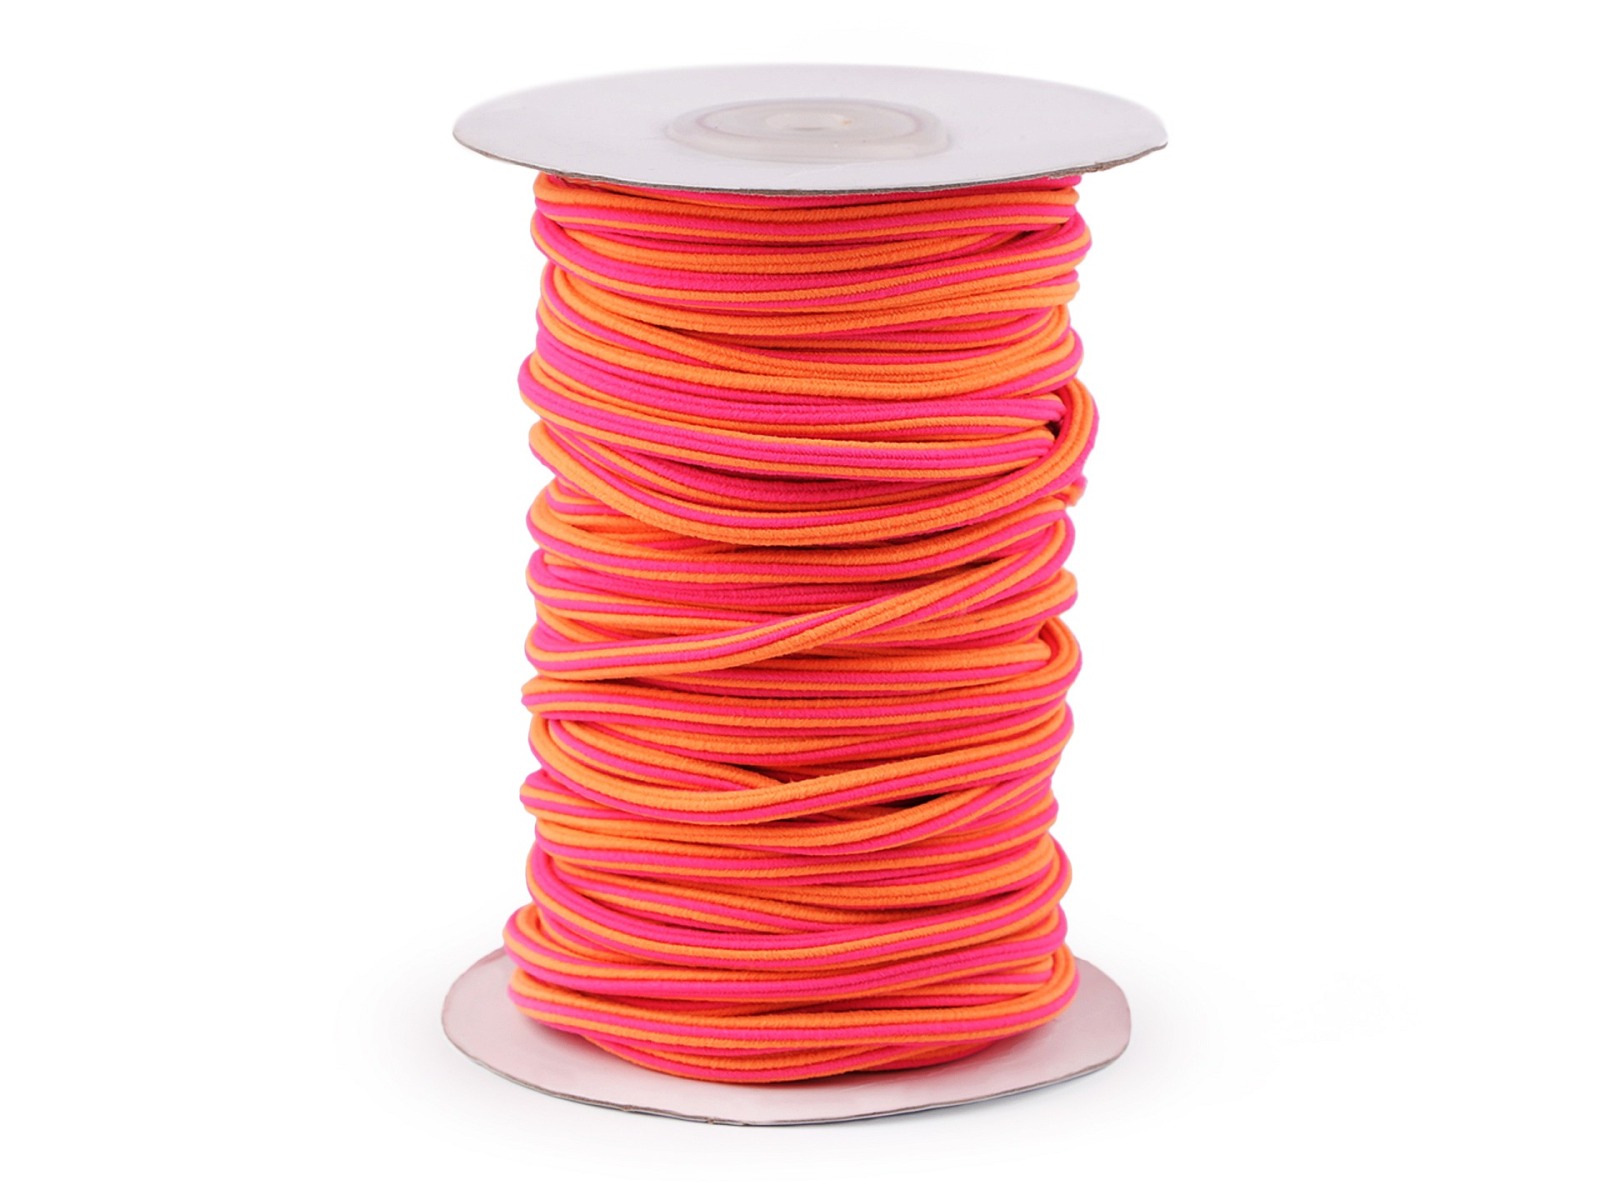 125 EUR/m - 2 m Gummi für Hoodies Kapuzen und Hosen - pink neon orange - Rundgummi 5 mm Durchmesser